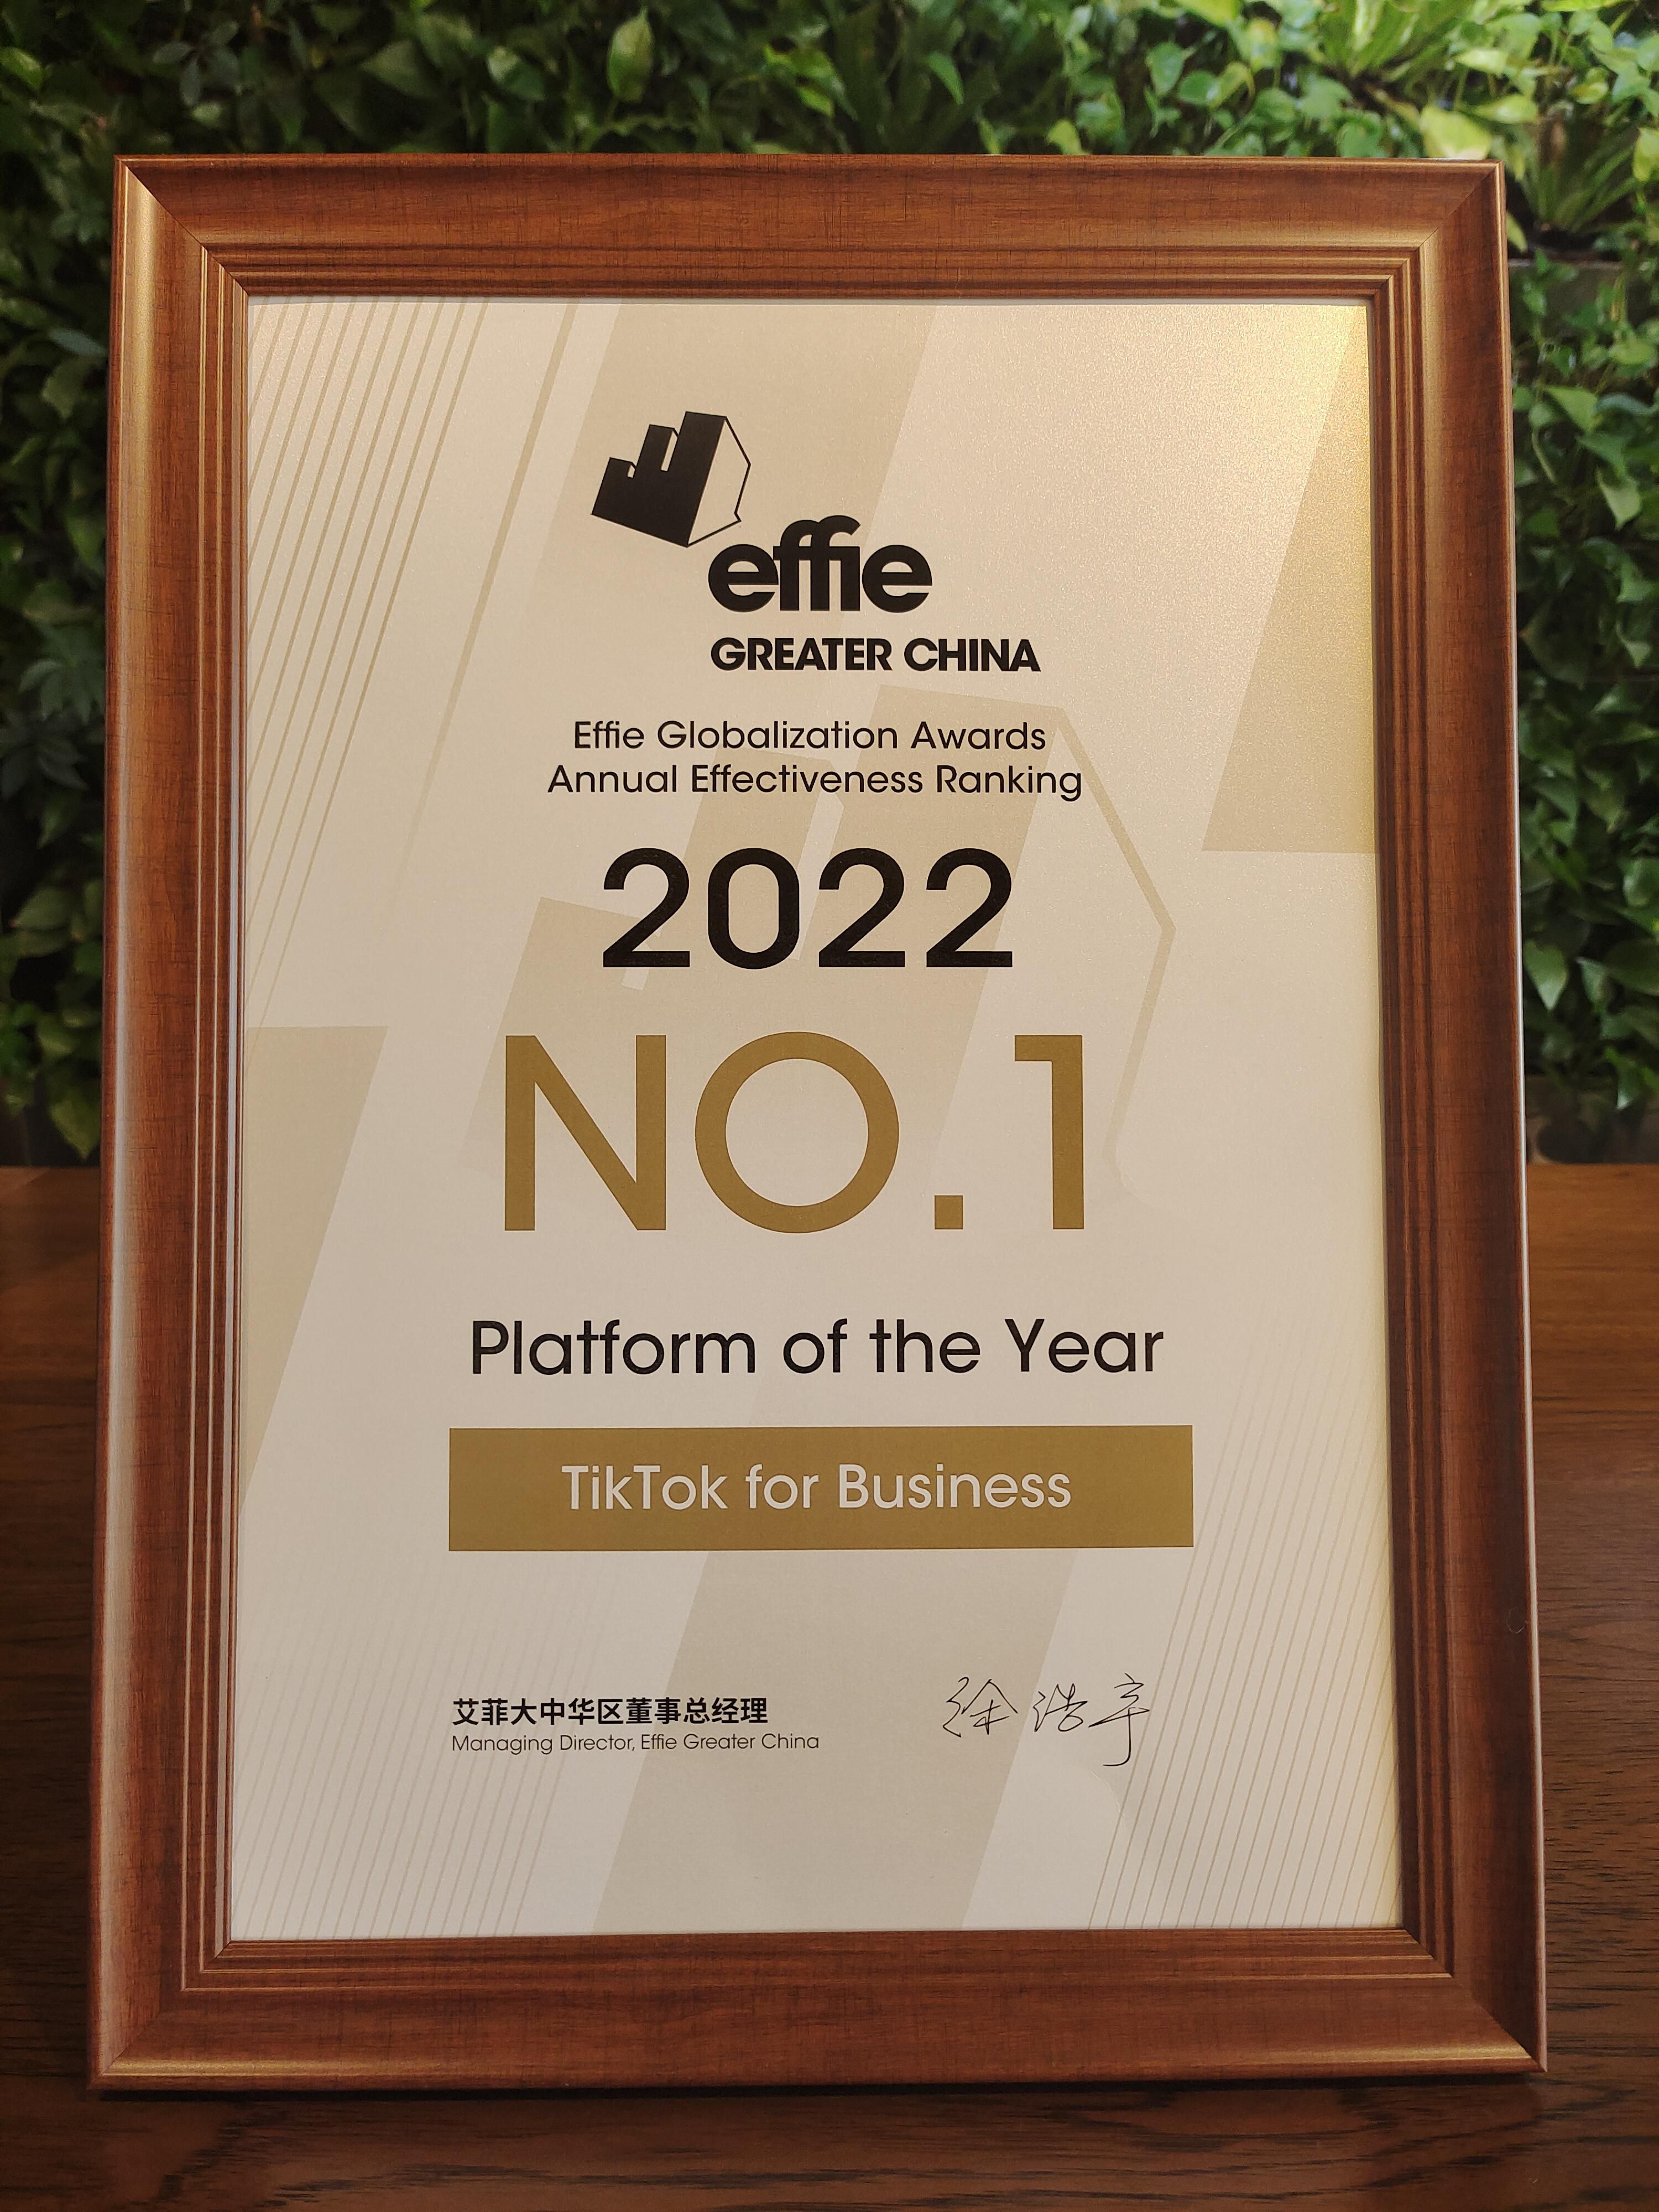 艾菲全球化营销奖 TikTok for Business 年度实效排名第一